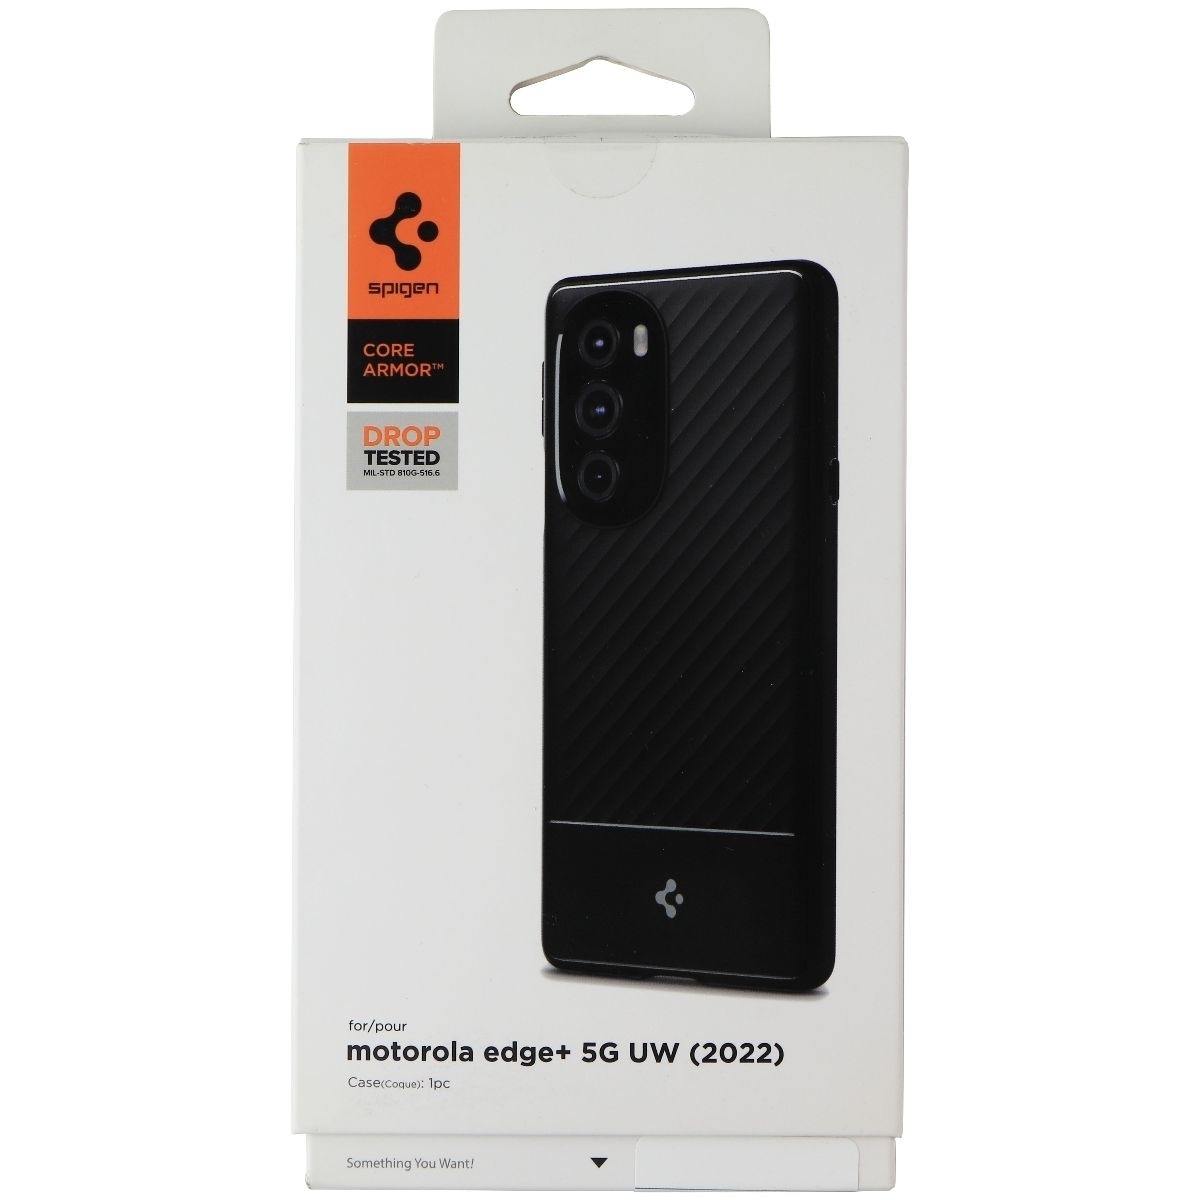 Spigen Core Armor Series Case For Motorola Edge+ 5G UW (2022) - Black